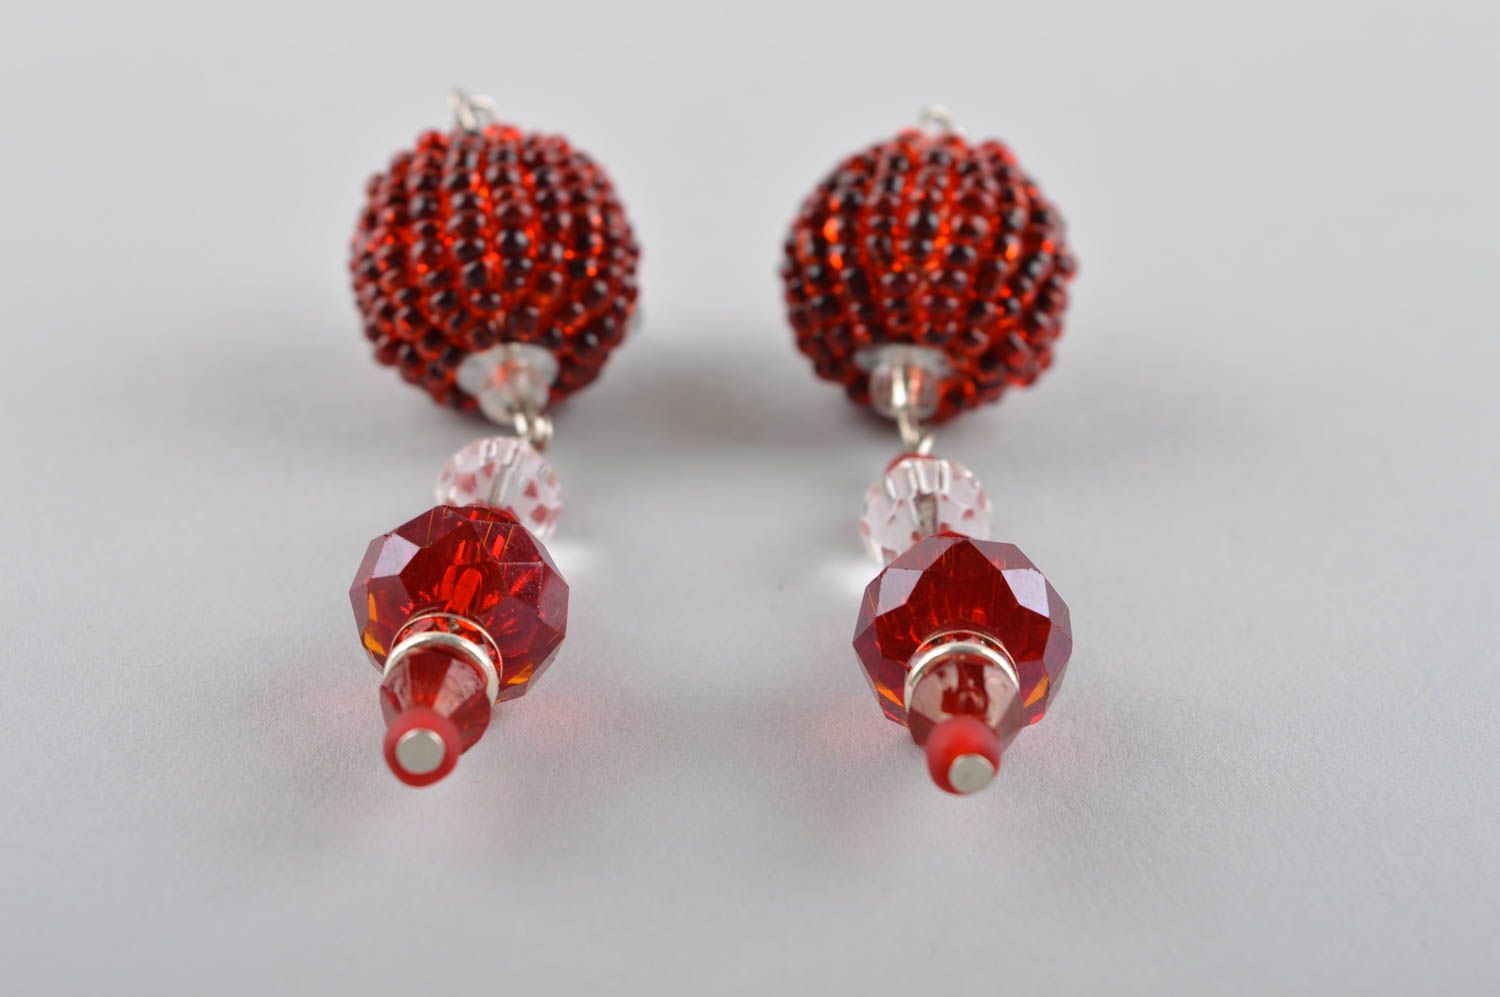 Beaded earrings handmade jewelry dangling earrings women accessories gift ideas photo 4